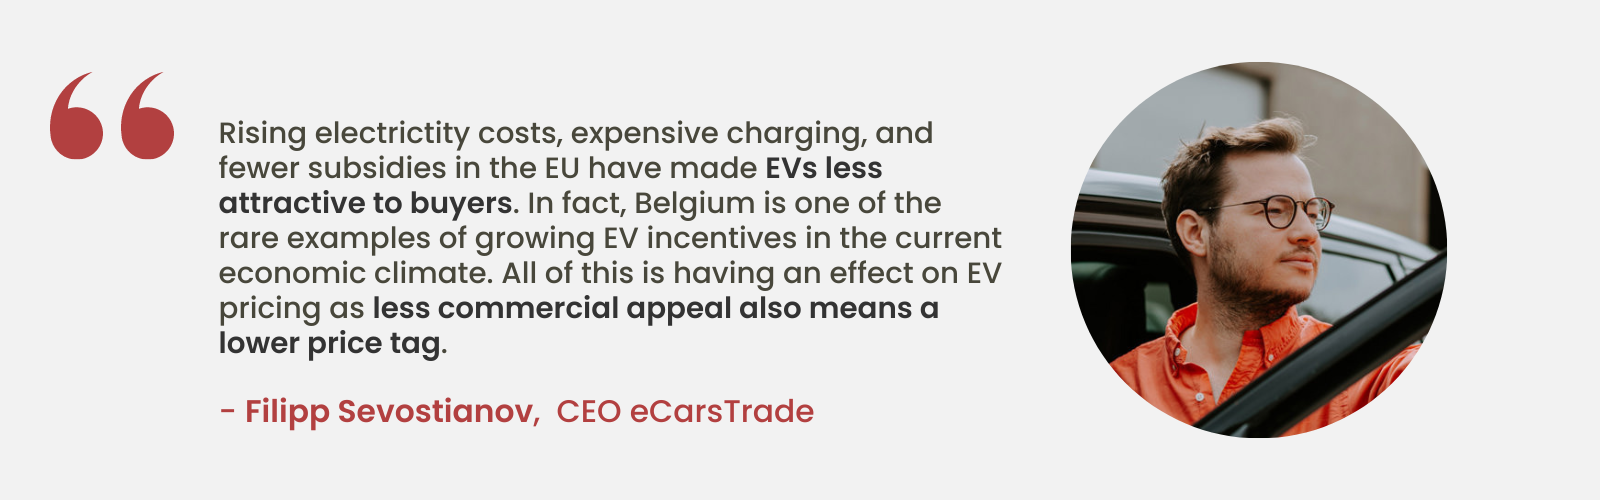 Experteneinblick von Filipp Sevostianov, CEO von eCarsTrade, über die abnehmende Attraktivität von Elektrofahrzeugen aufgrund steigender Kosten und weniger Subventionen in der EU und unterstreicht die einzigartige Position Belgiens mit wachsenden Anreizen für Elektrofahrzeuge.